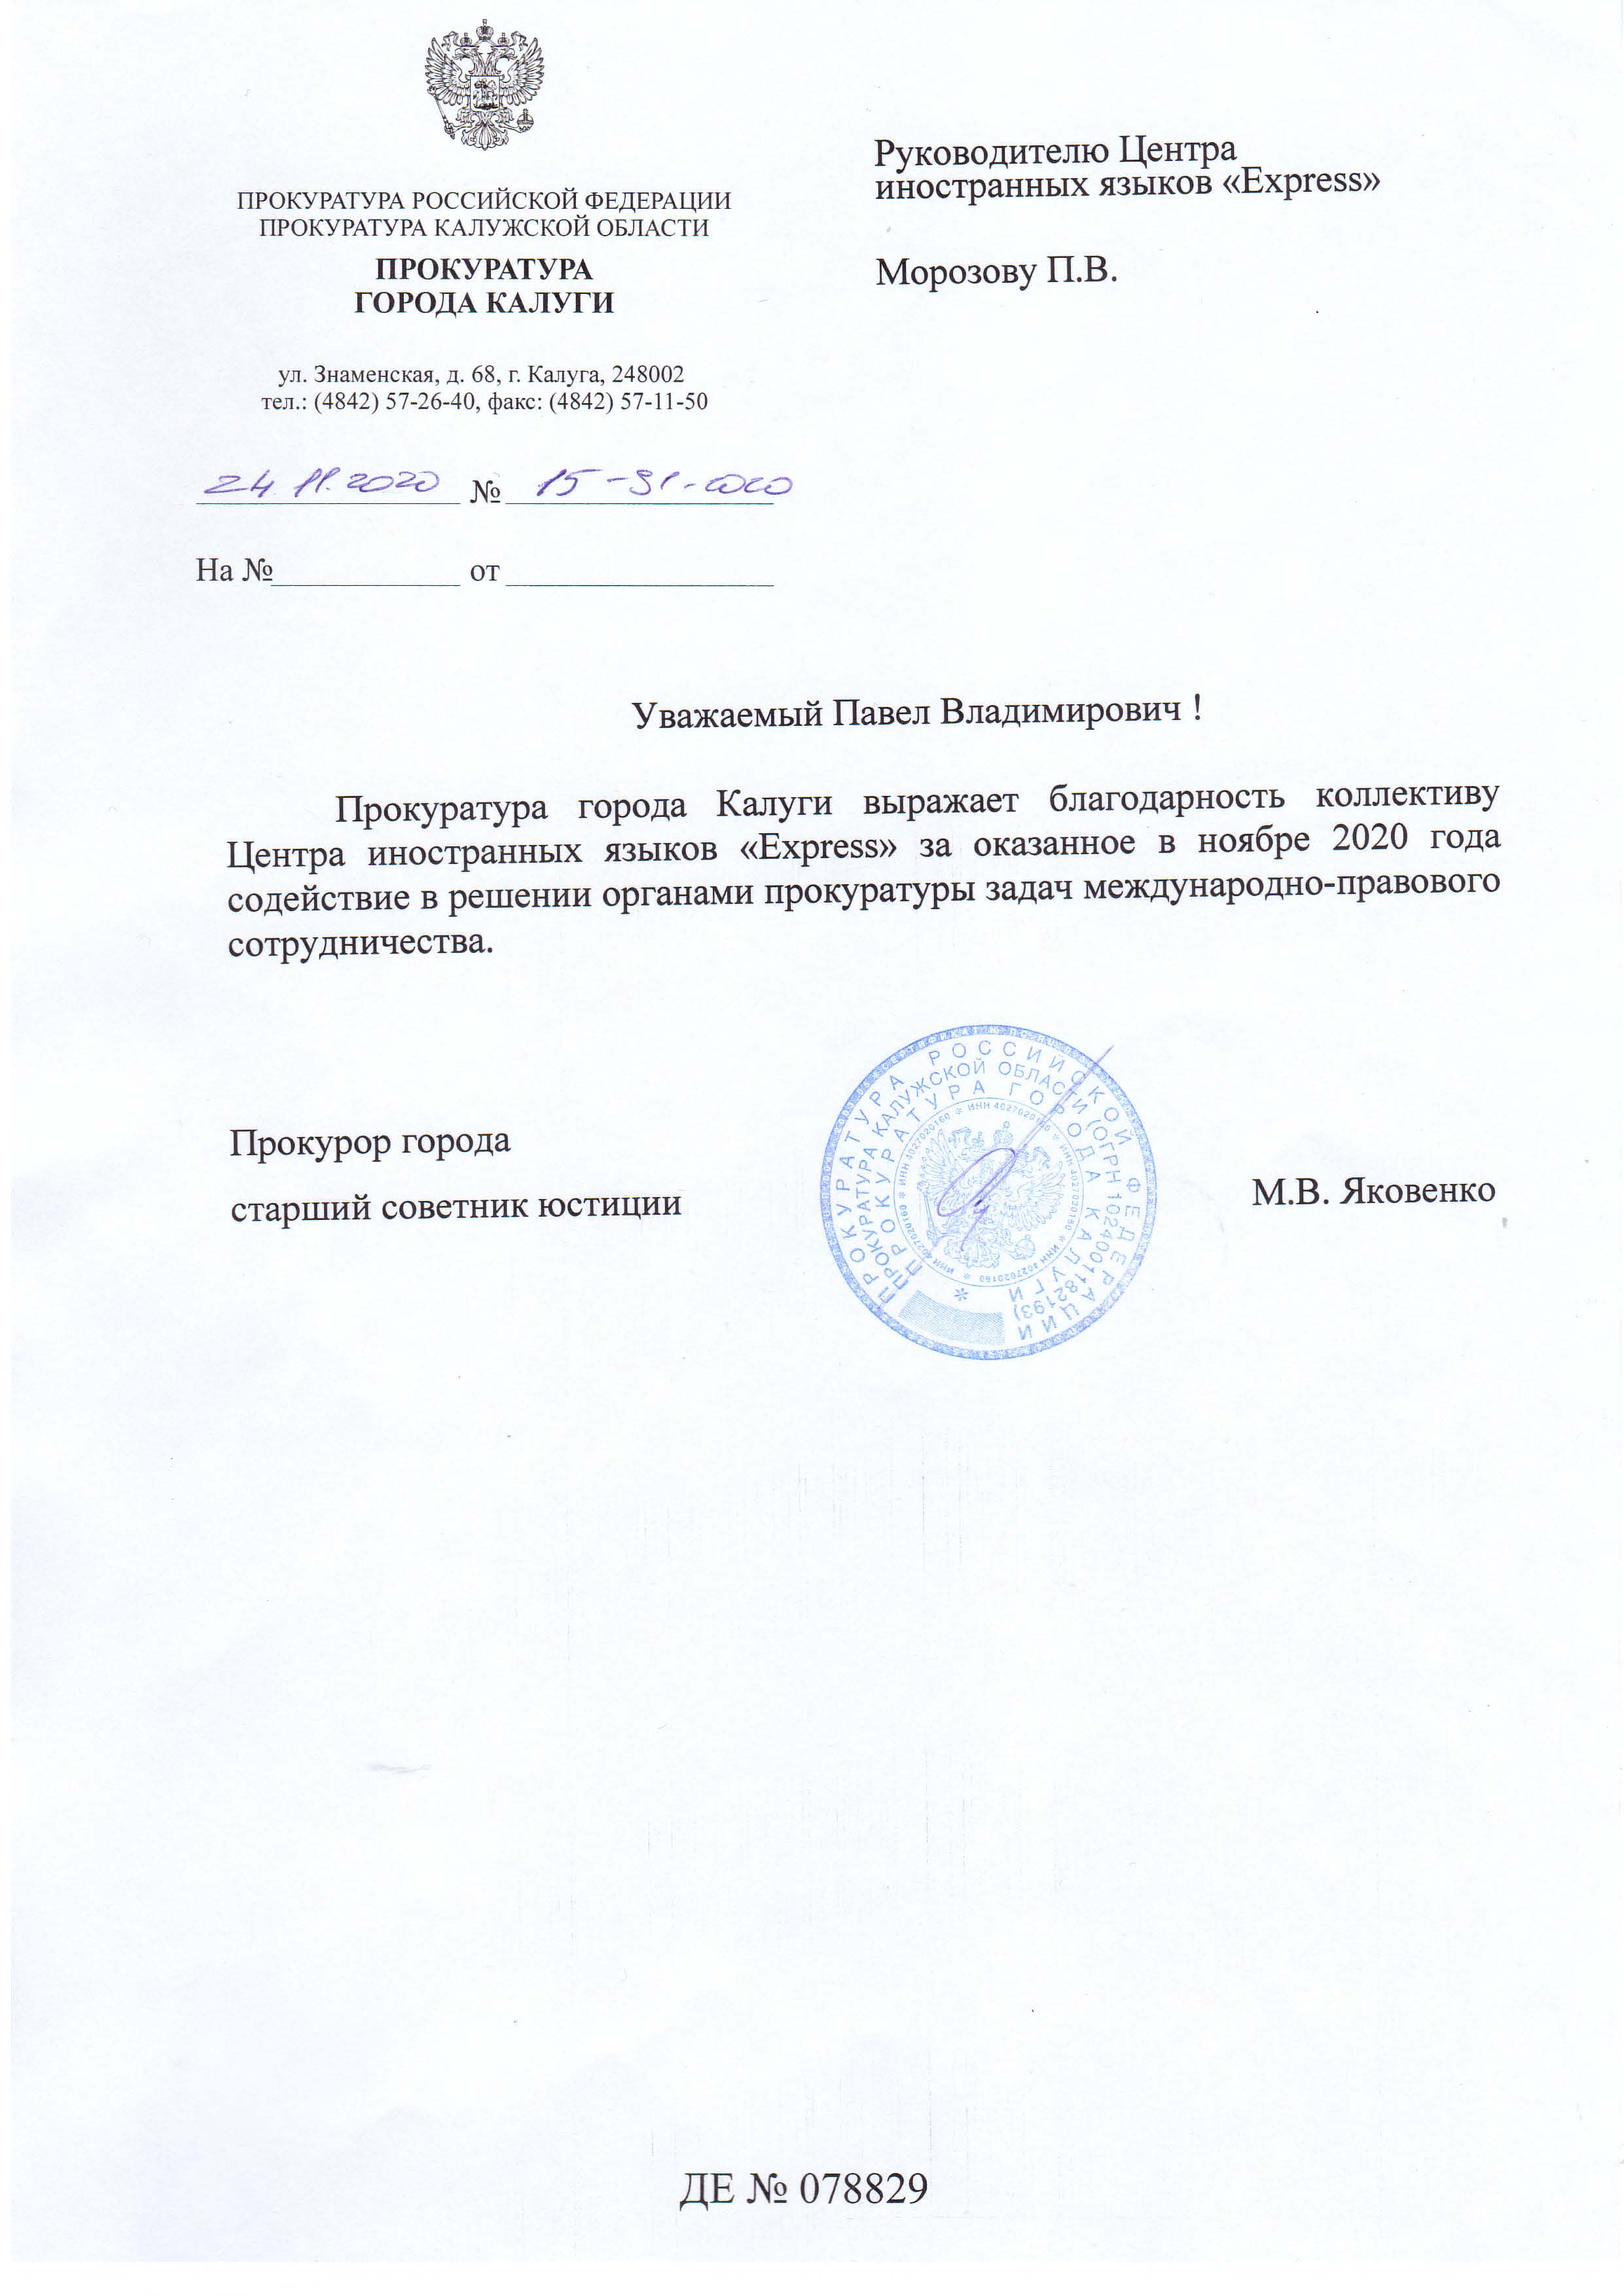 Рекомендация Прокуратуры города Калуги